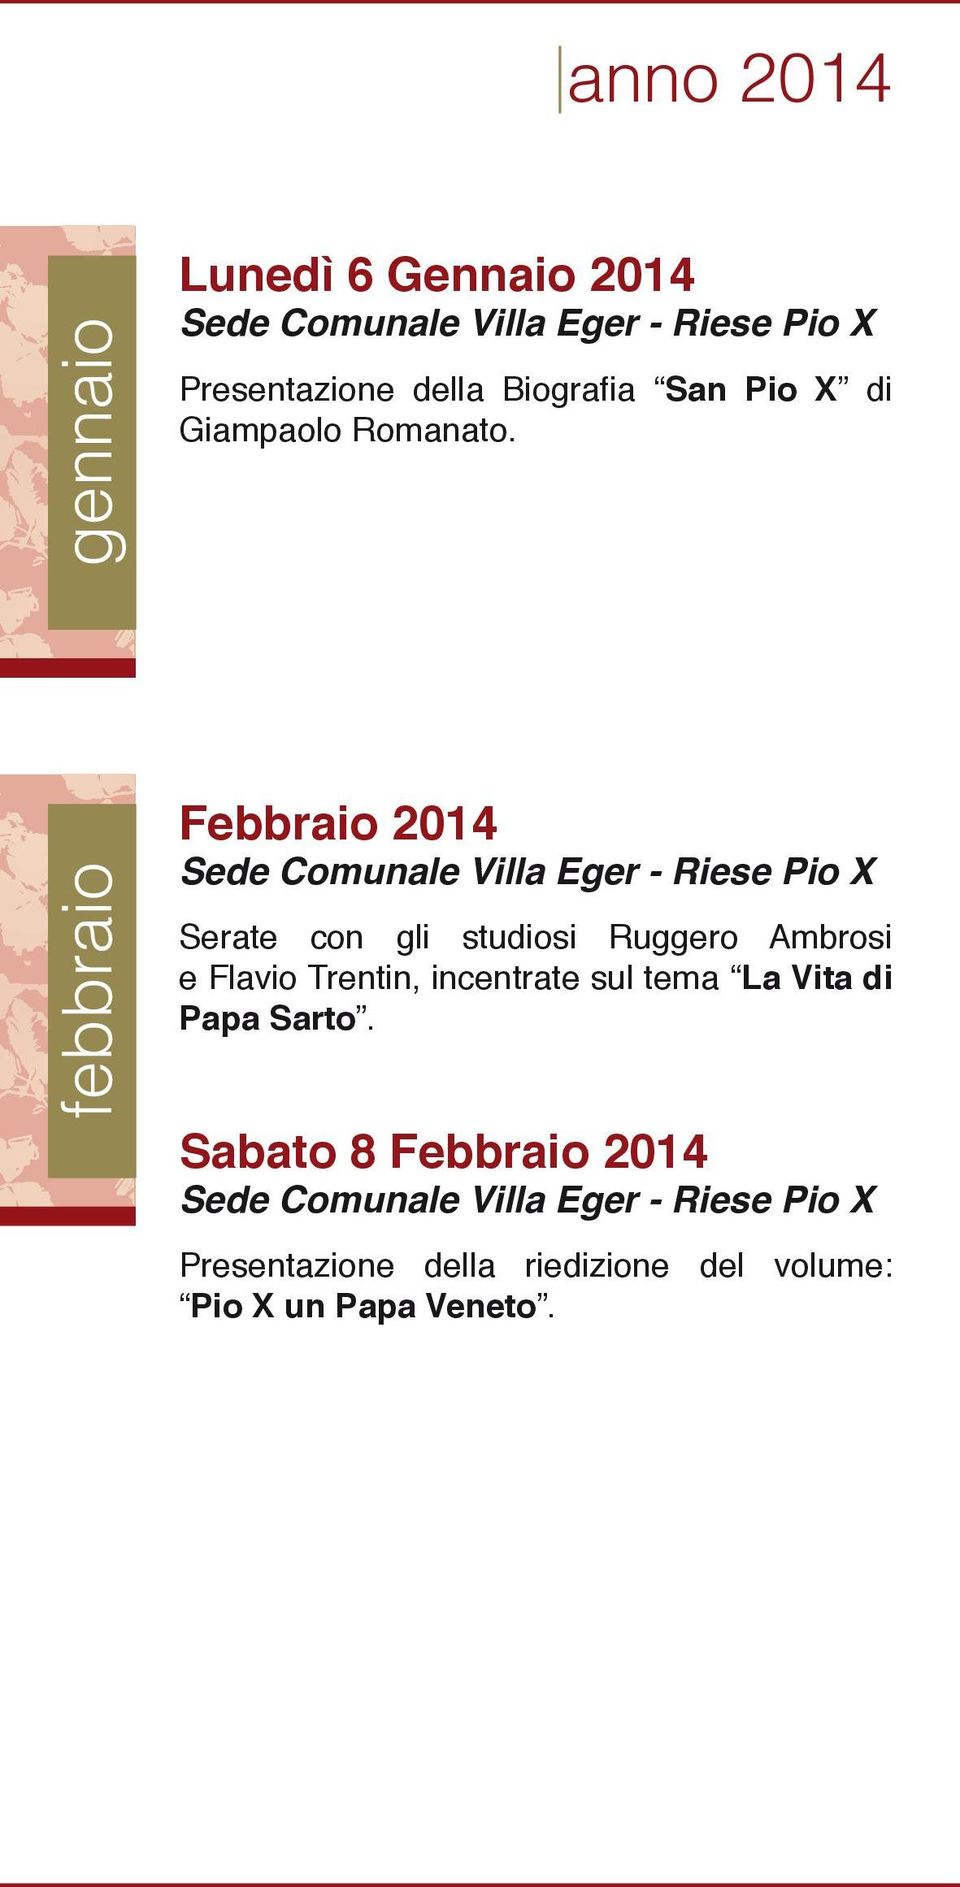 febbraio Febbraio 2014 Sede Comunale Villa Eger - Serate con gli studiosi Ruggero Ambrosi e Flavio